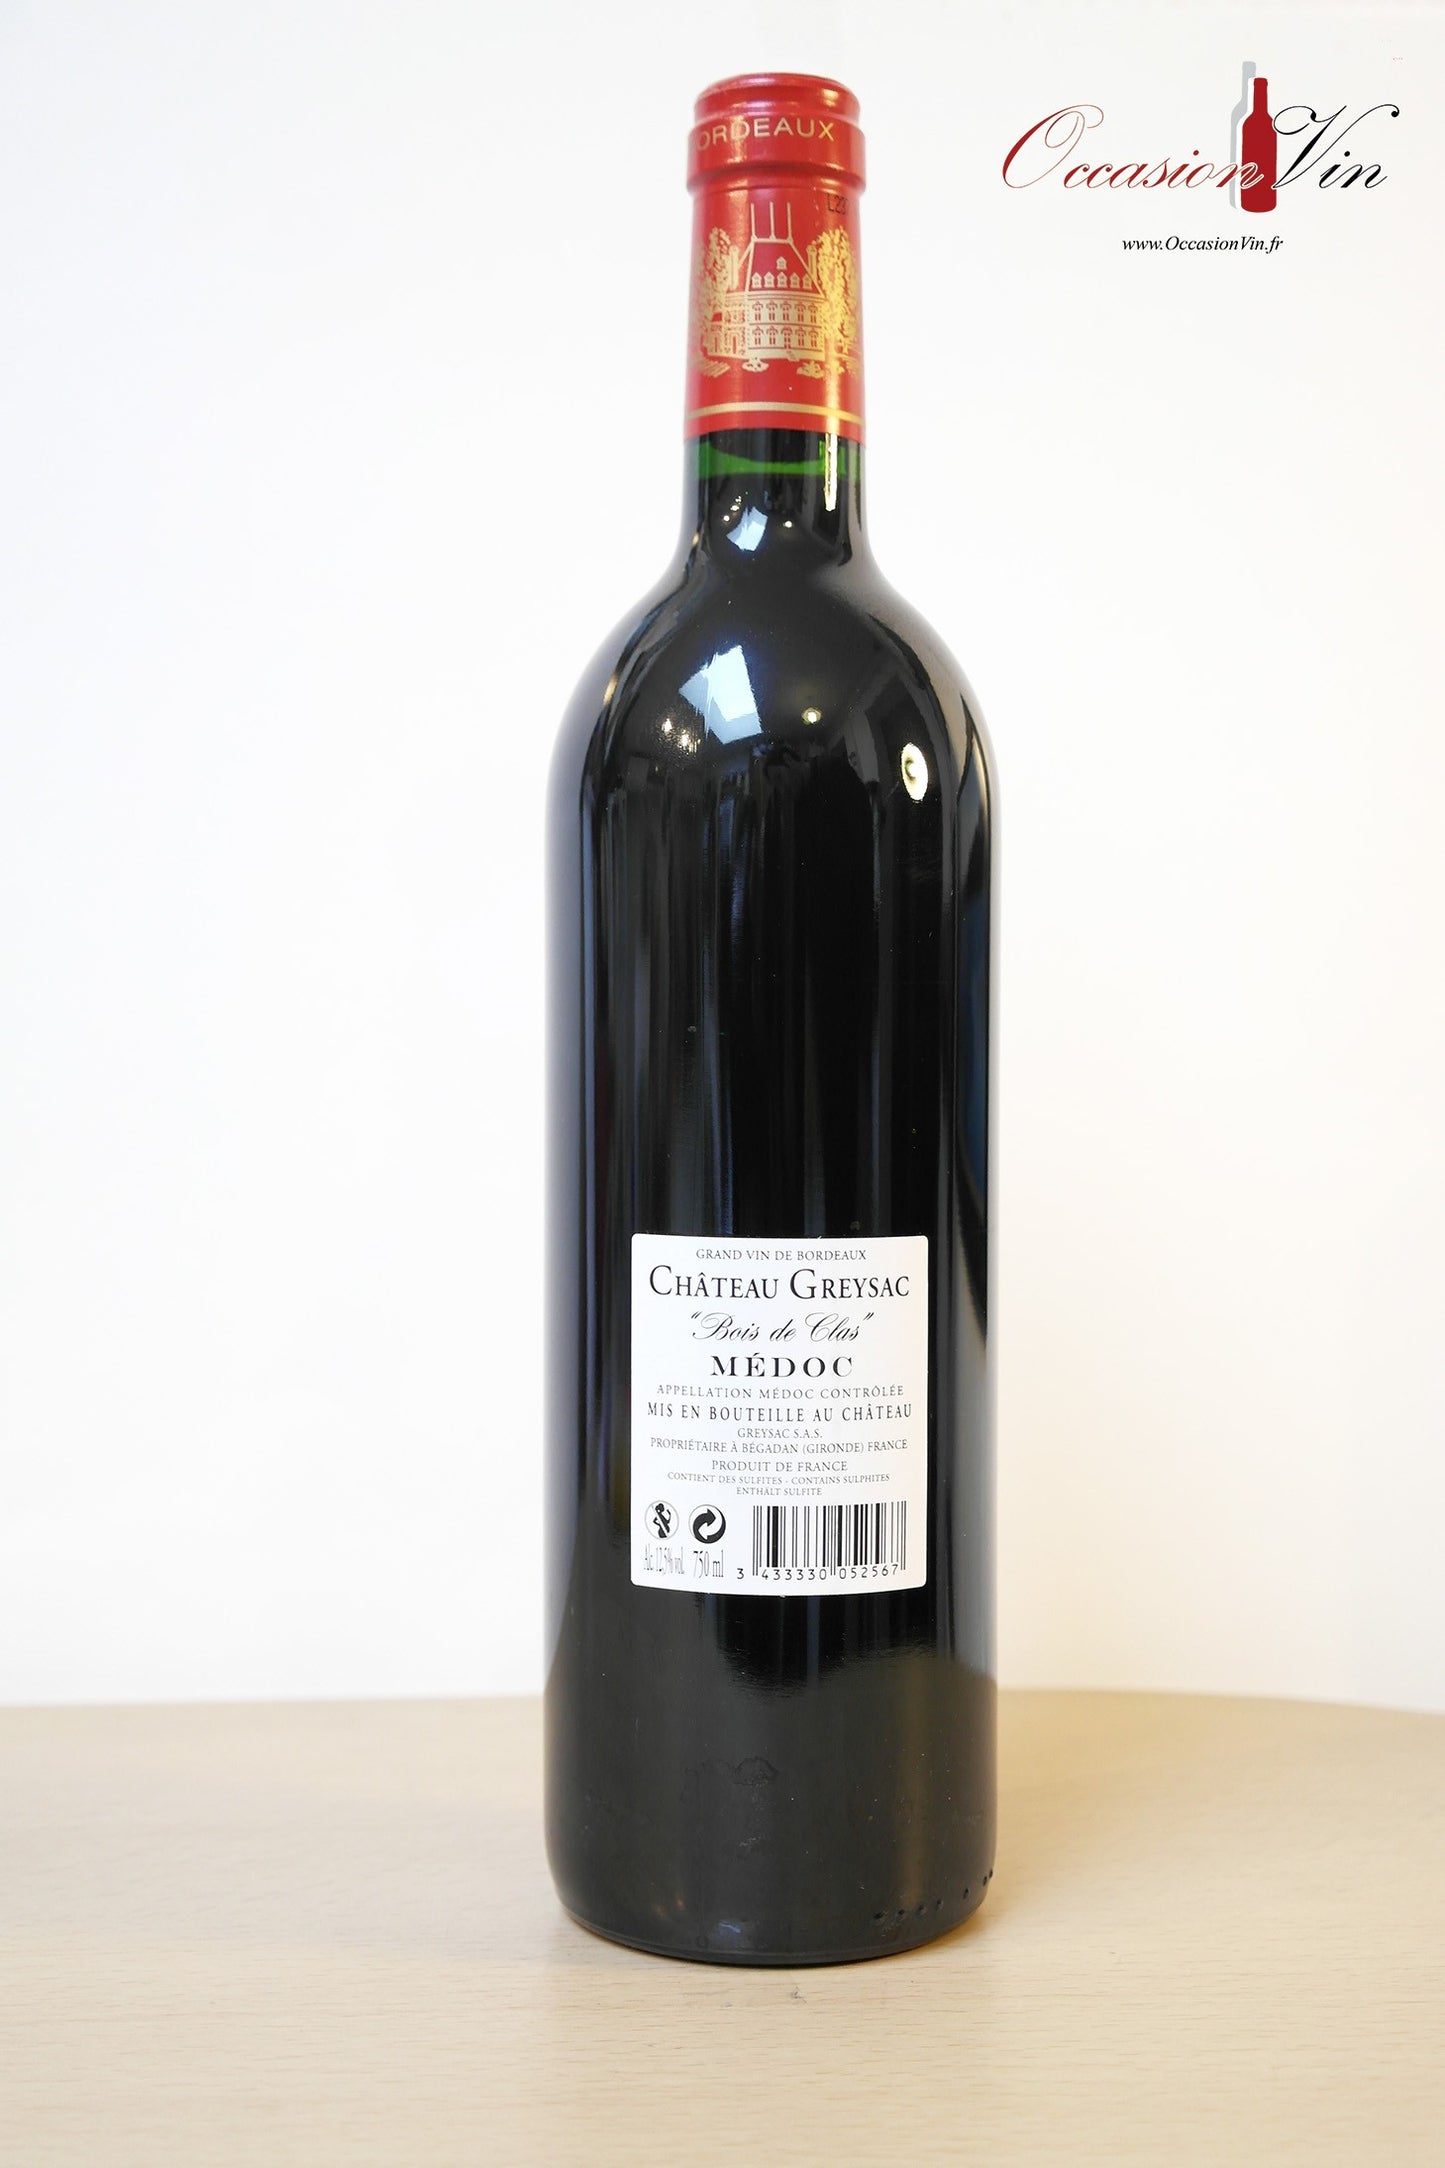 Château Greysac Vin 2002